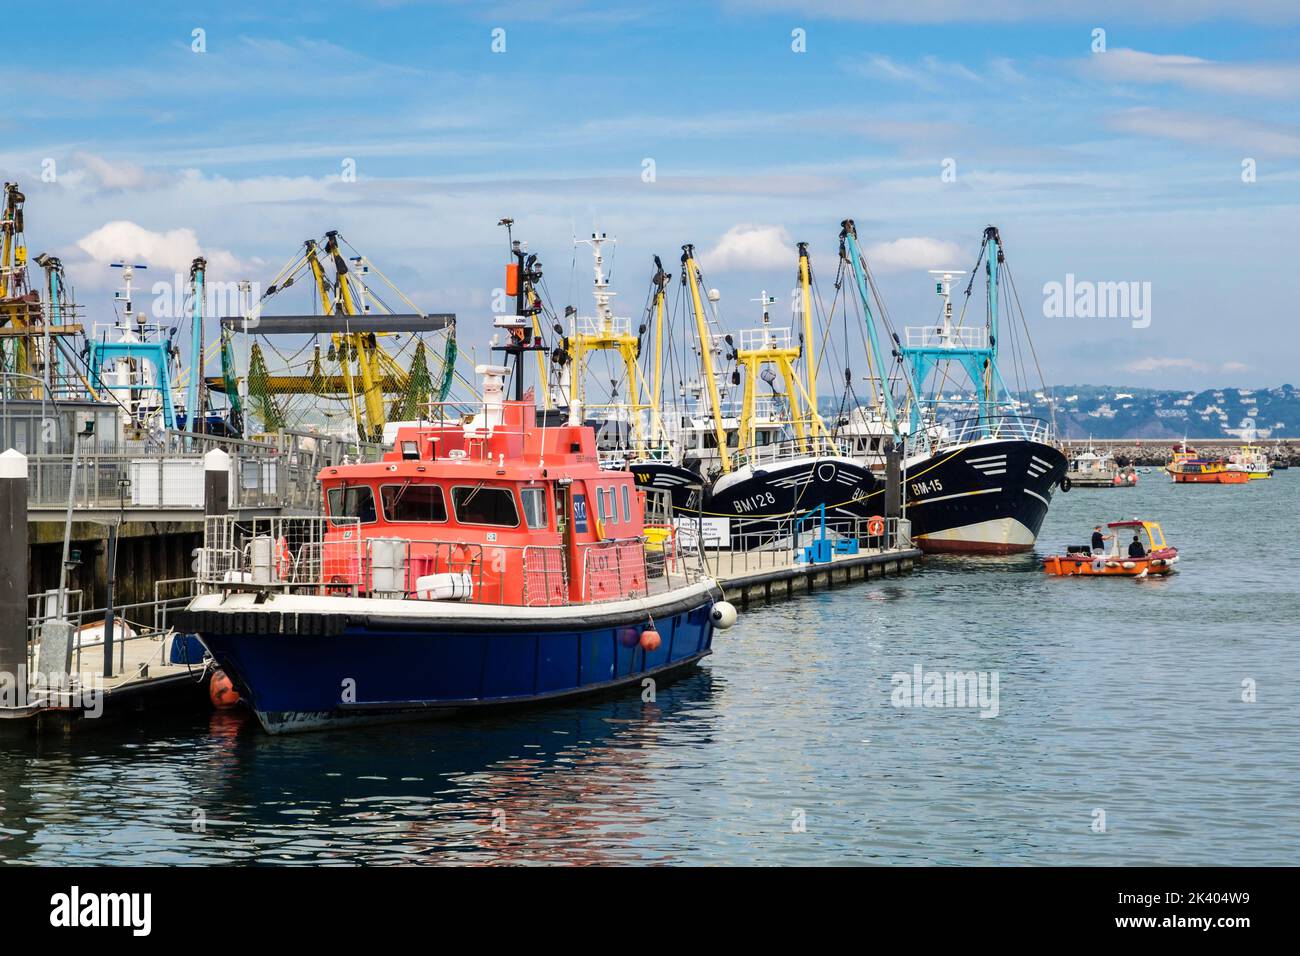 Barco piloto y flota pesquera comercial en el puerto exterior. Brixham, Devon, Inglaterra, Reino Unido, Gran Bretaña Foto de stock